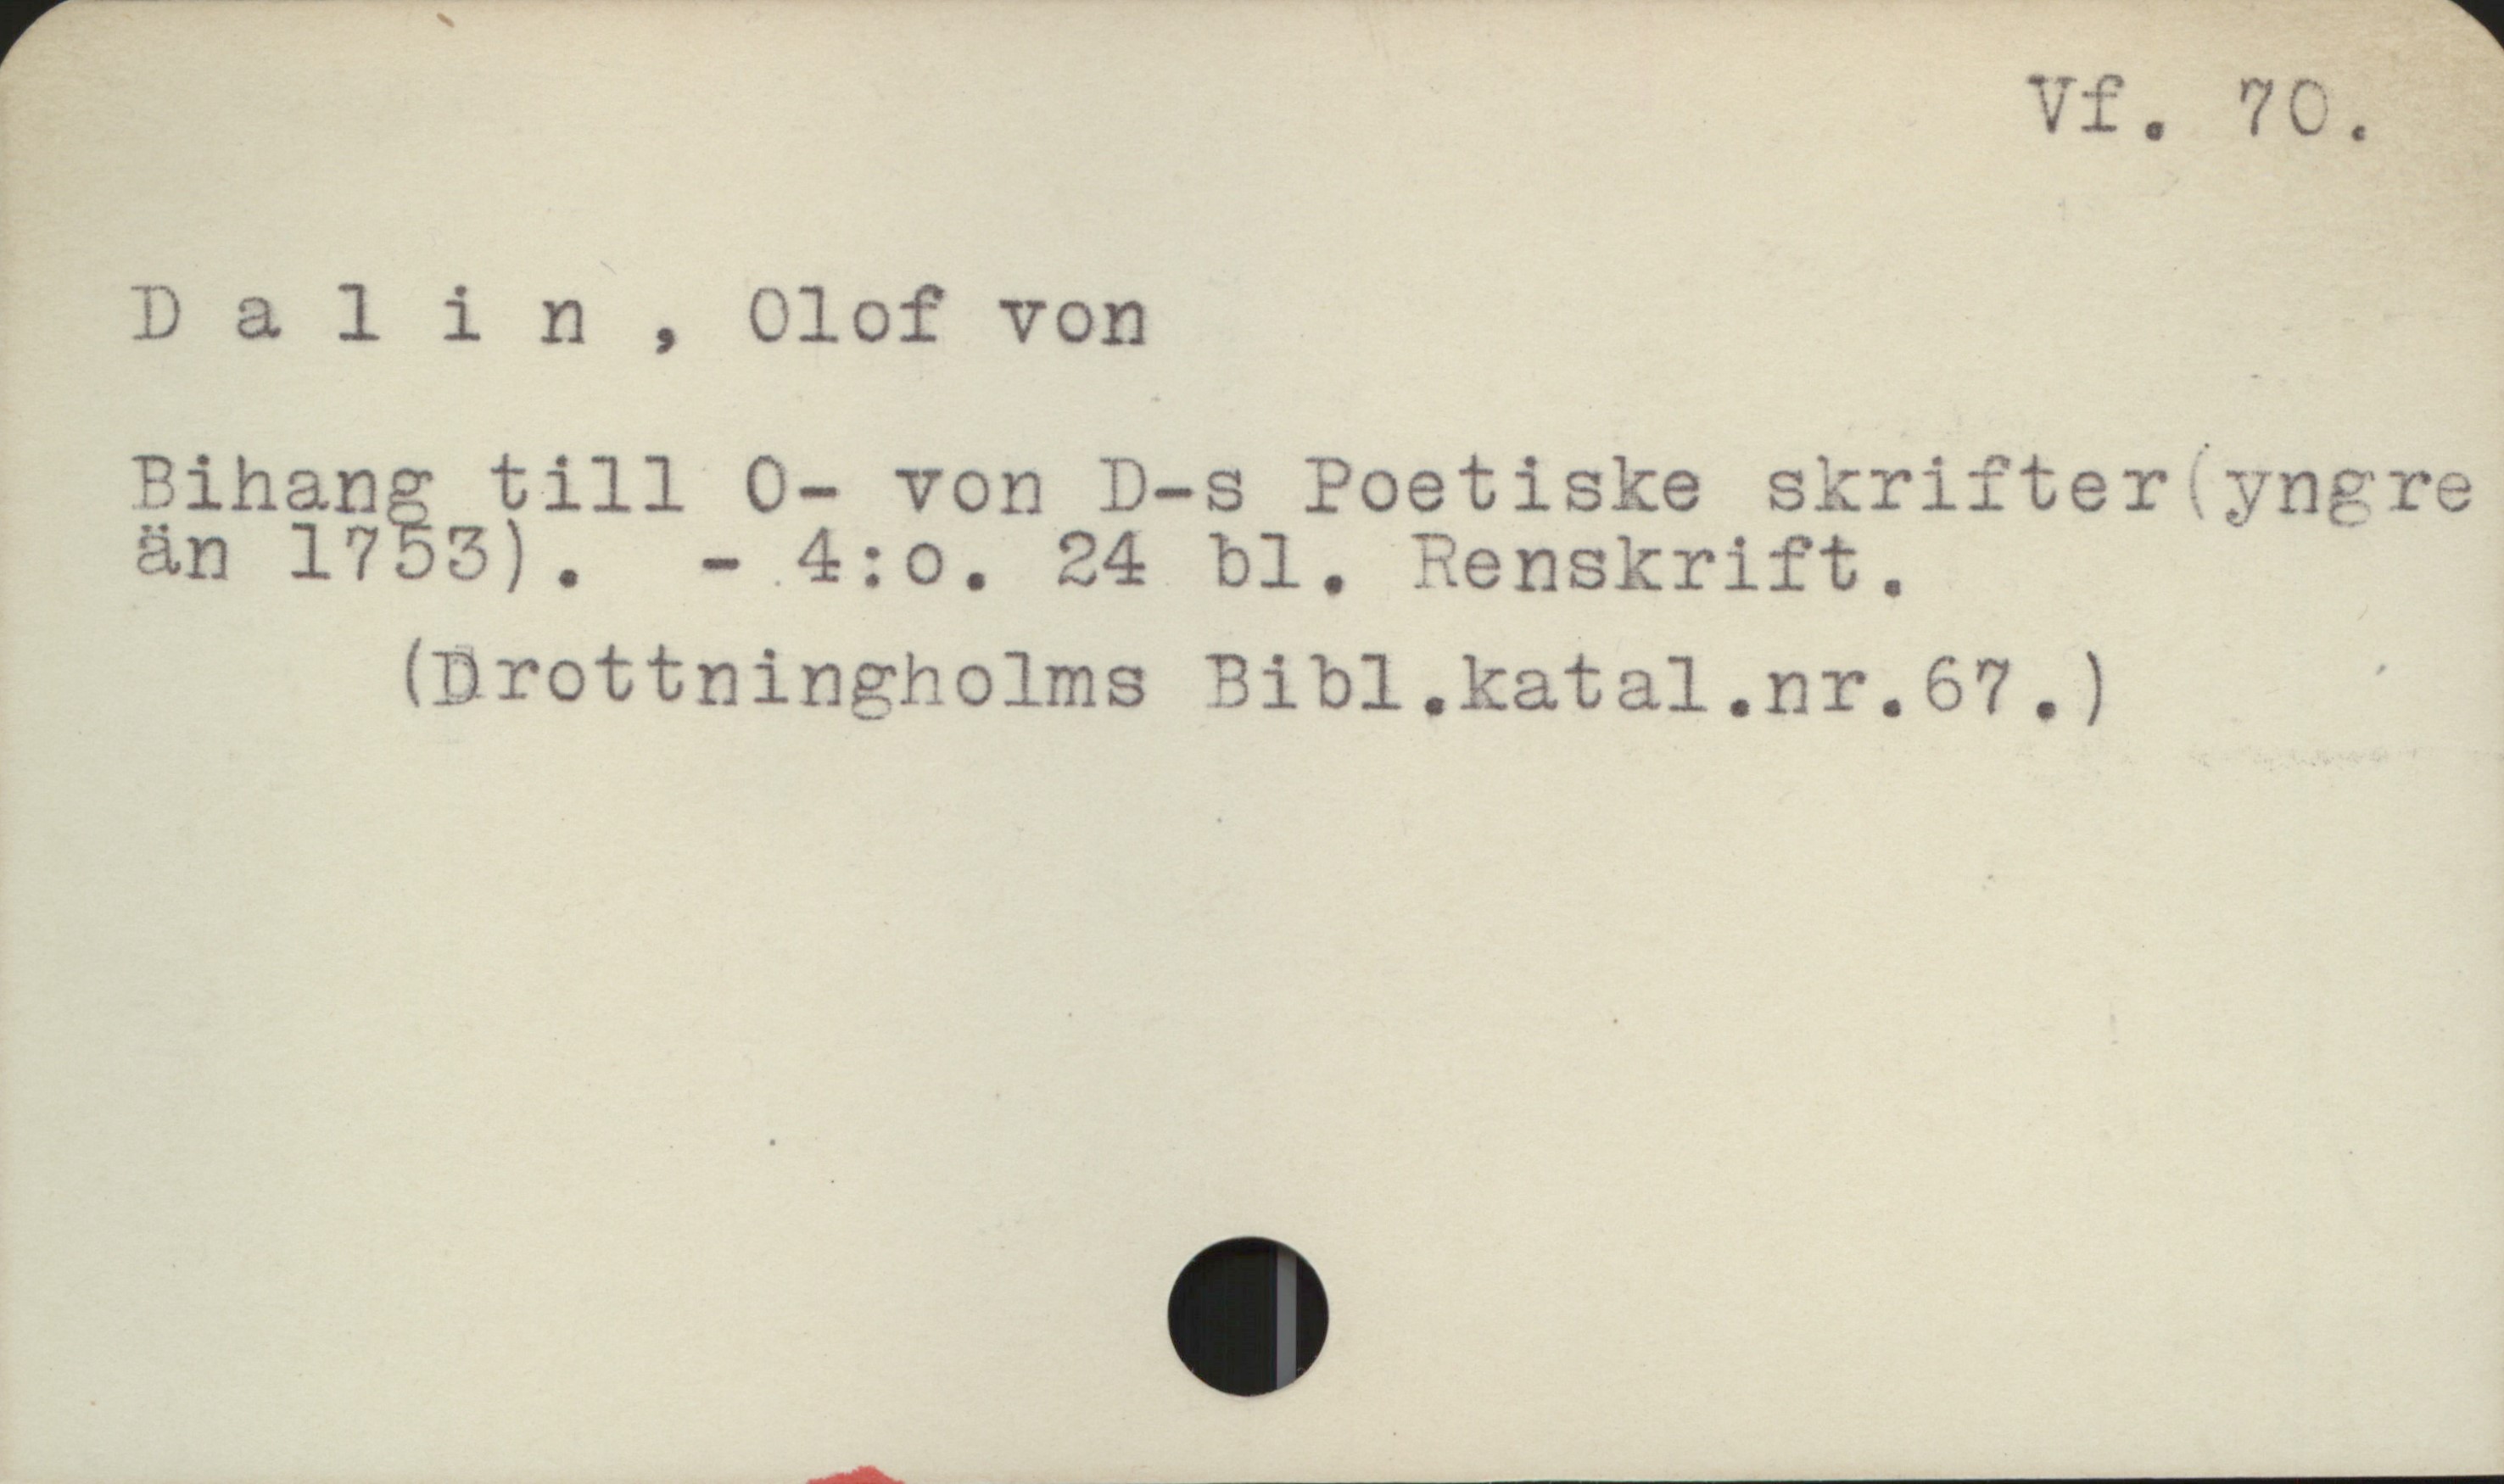 Dalin, Olof von Vf. 70.
Dalin, Olof von
Bihang till O- von D-s Poetiske skrifter yngre
än 1755). - 4:o. 24 bl. Renskrift.
(Drottningholms Bibl.katal.nr.67 .)